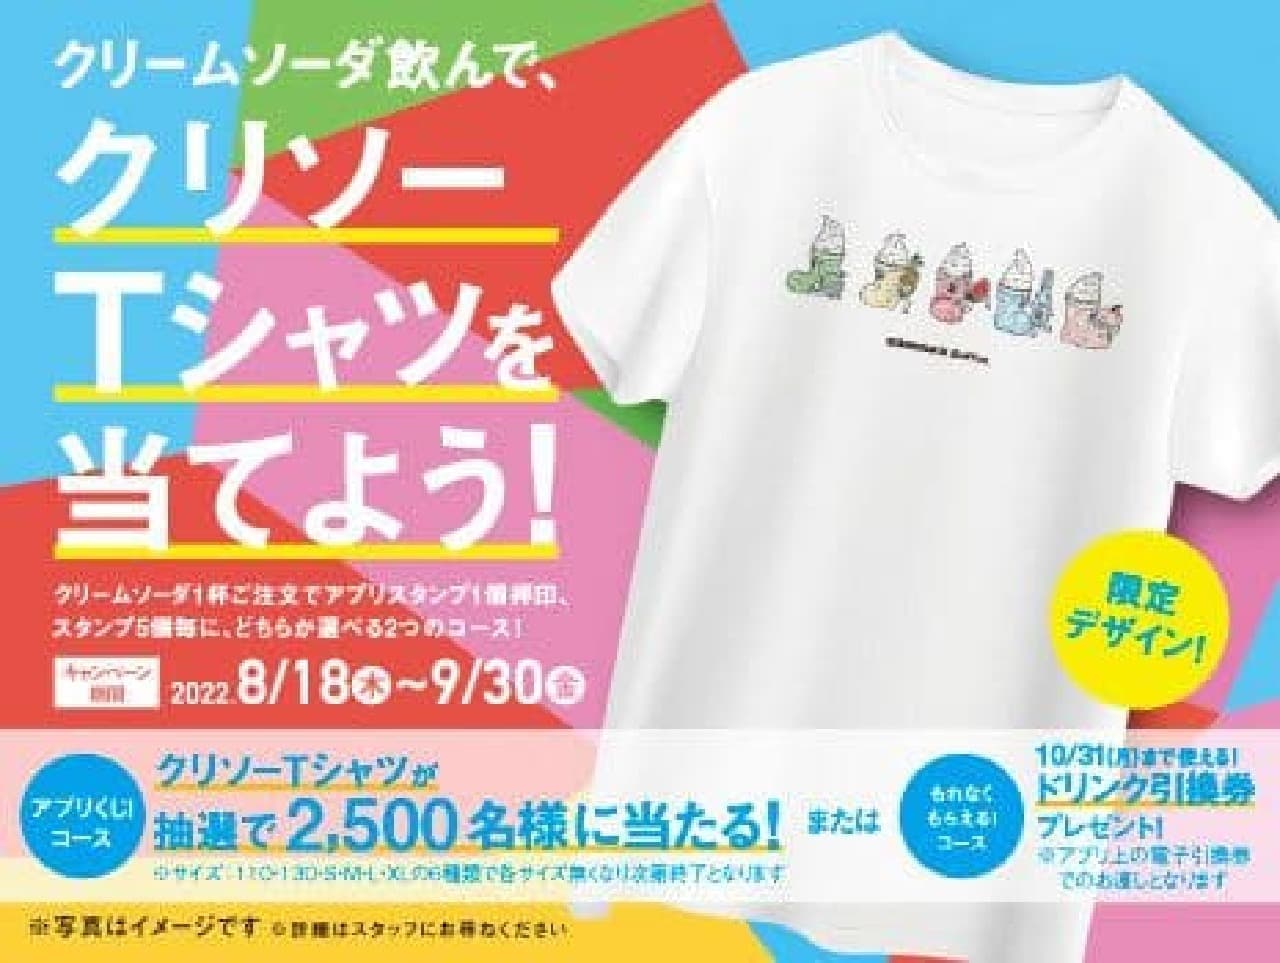 Komeda Coffee Shop "Colorful Cream Soda" Commemorative Campaign